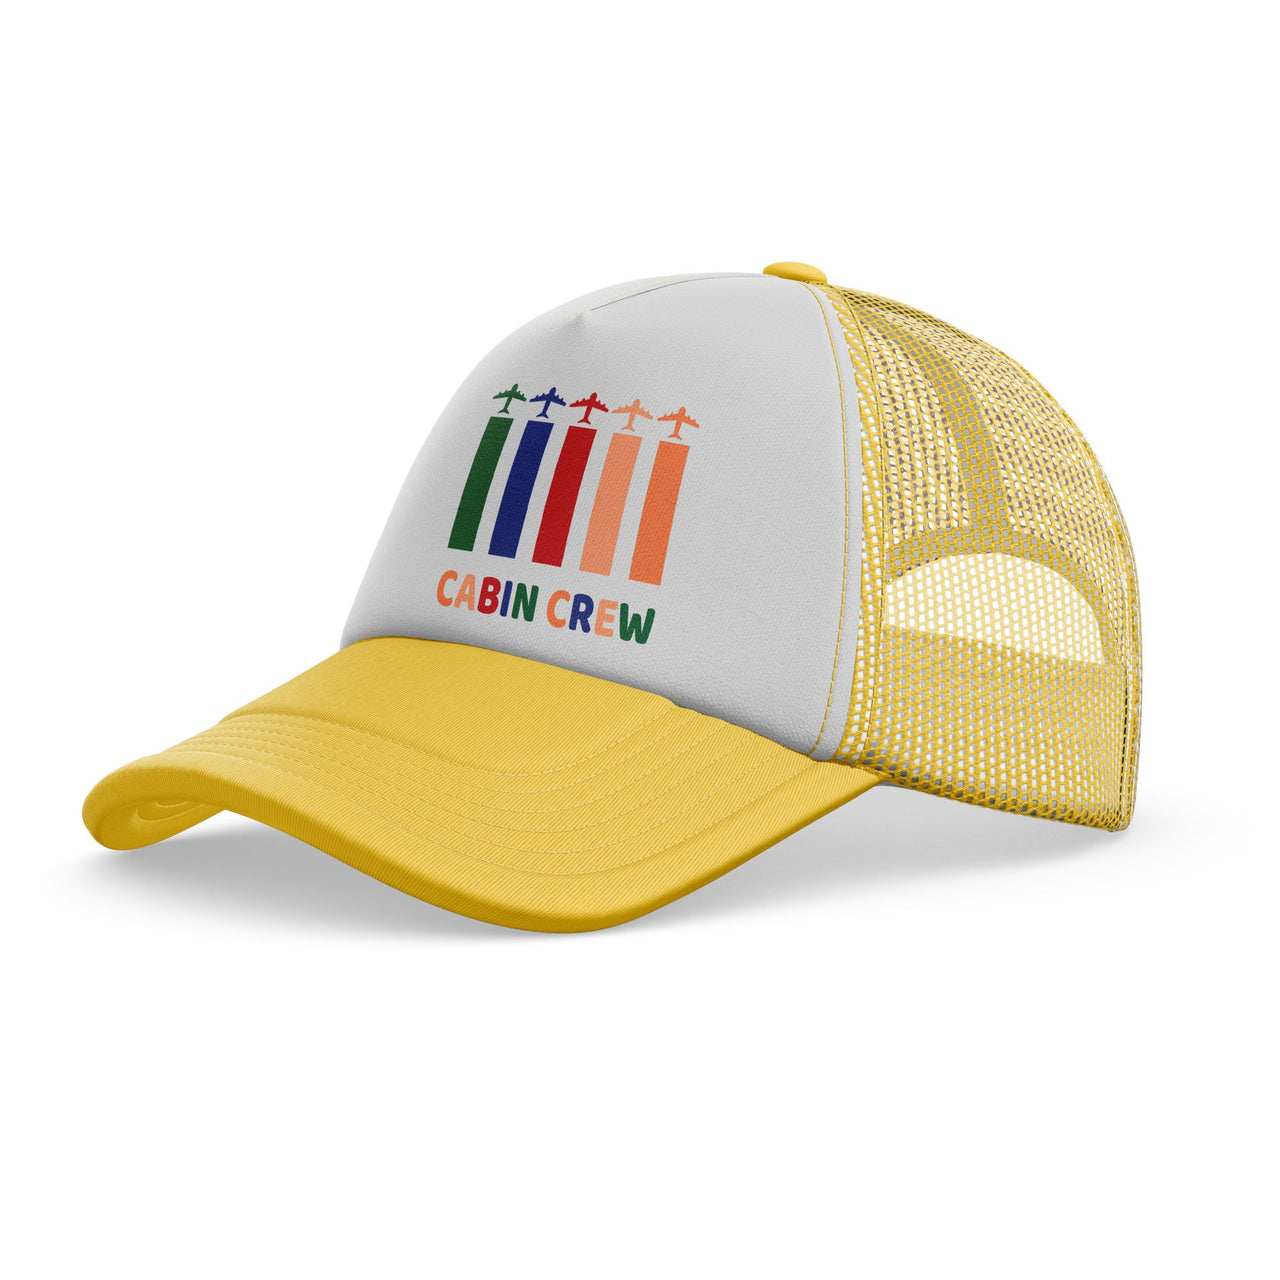 Colourful Cabin Crew Designed Trucker Caps & Hats